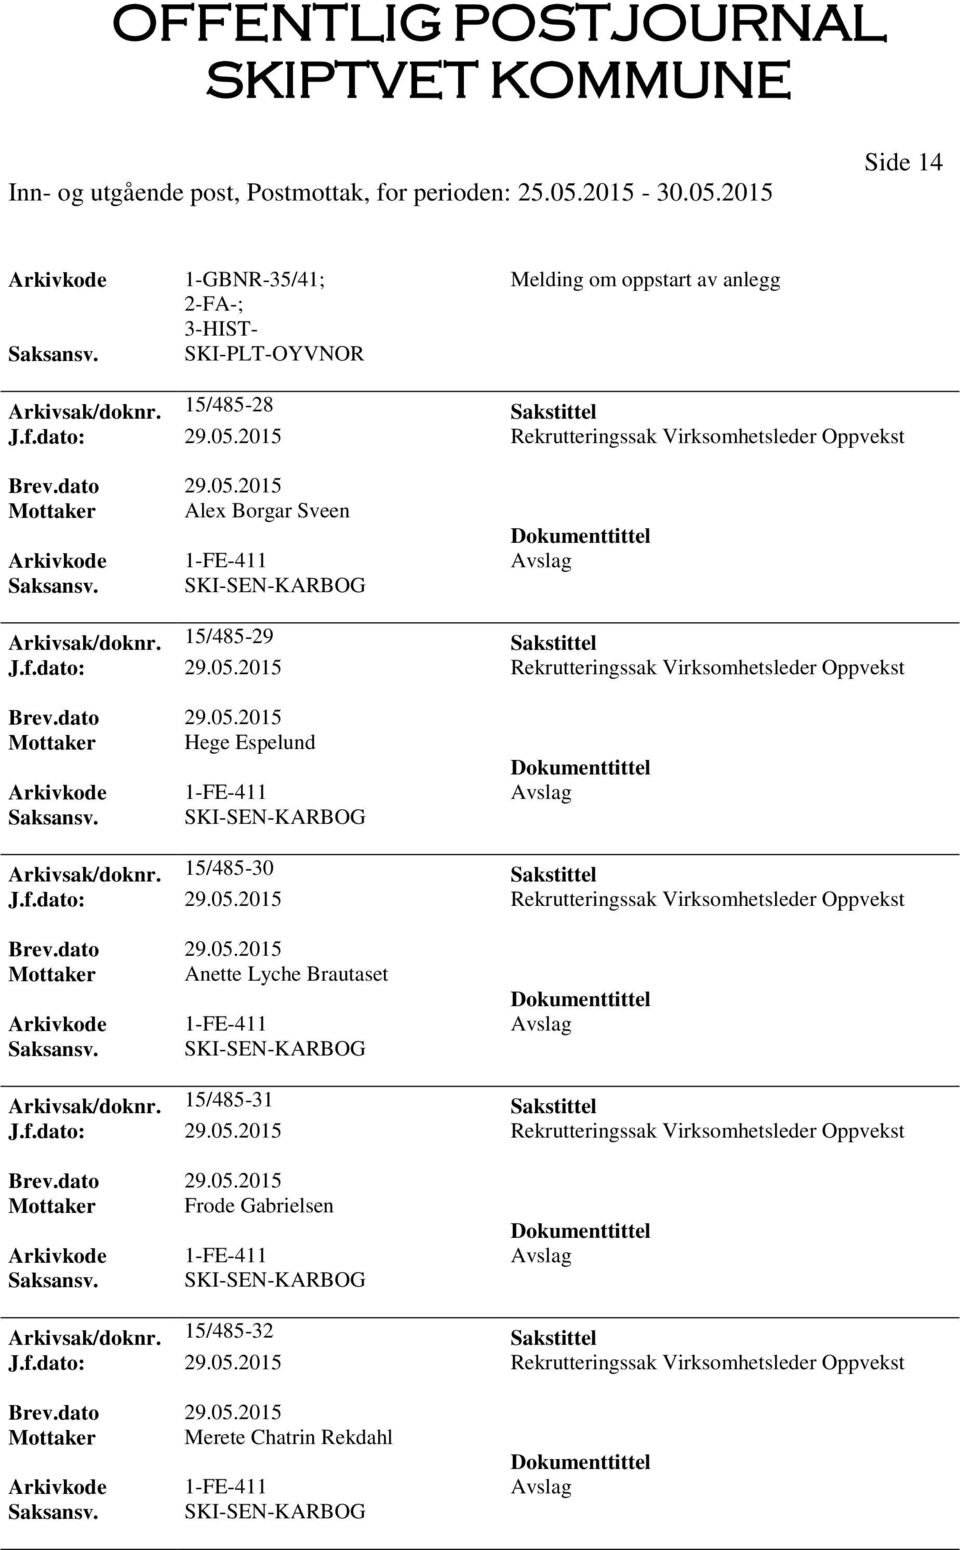 2015 Rekrutteringssak Virksomhetsleder Oppvekst Mottaker Hege Espelund 1-FE-411 Avslag Arkivsak/doknr. 15/485-30 Sakstittel J.f.dato: 29.05.